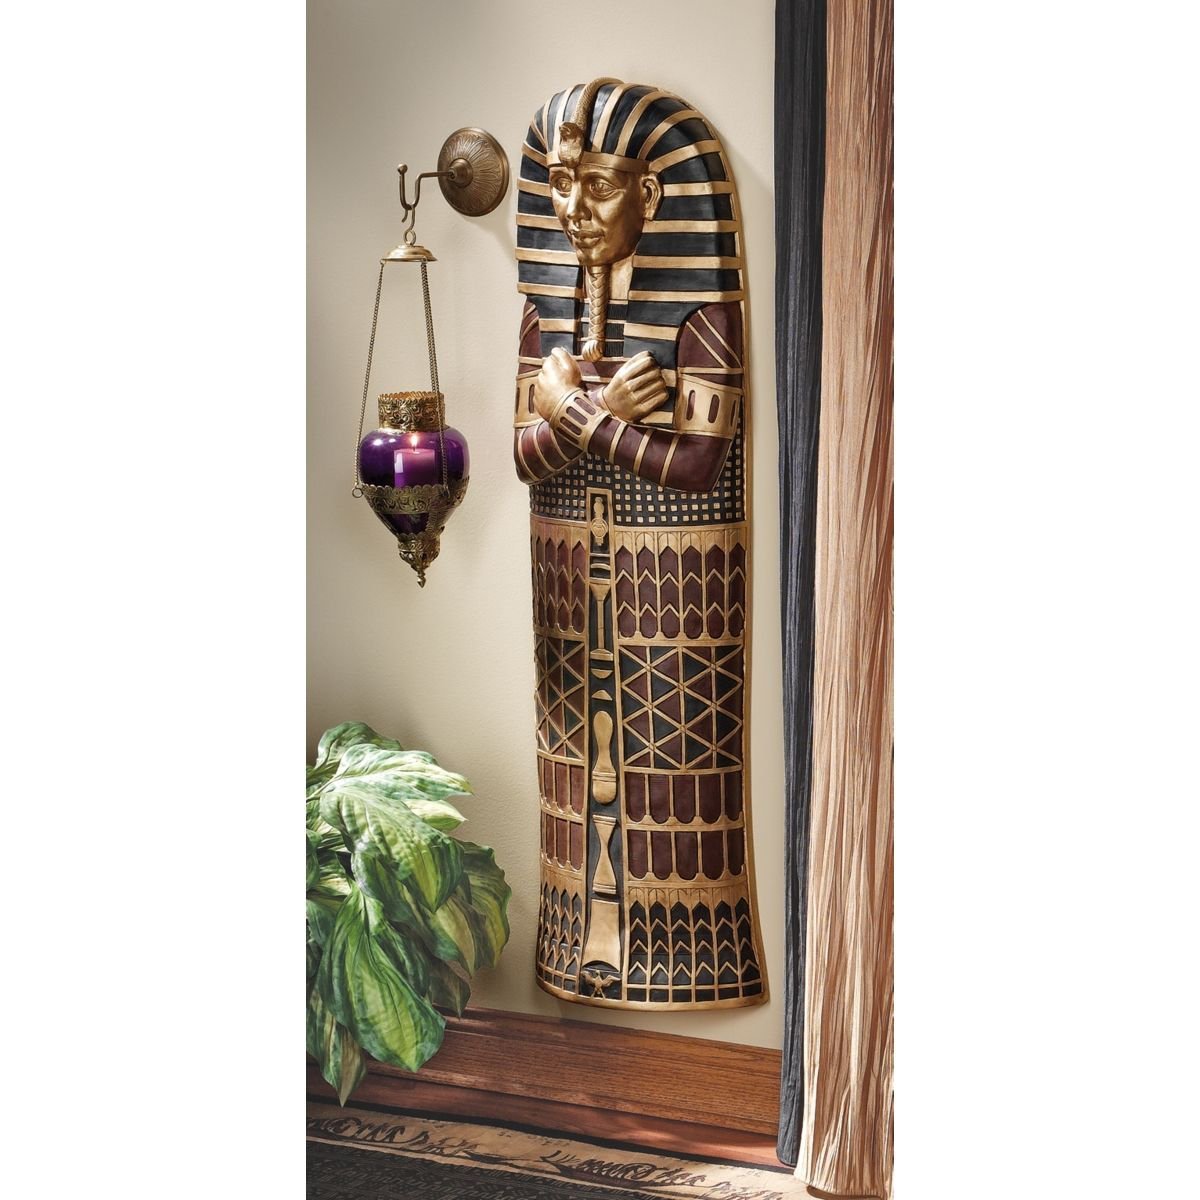 ツタンカーメンの棺 壁掛けインテリア置物ホームデコ小物装飾品エジプトオブジェ飾り雑貨エスニックエジプト黄金マスクウォールデコ壁飾り